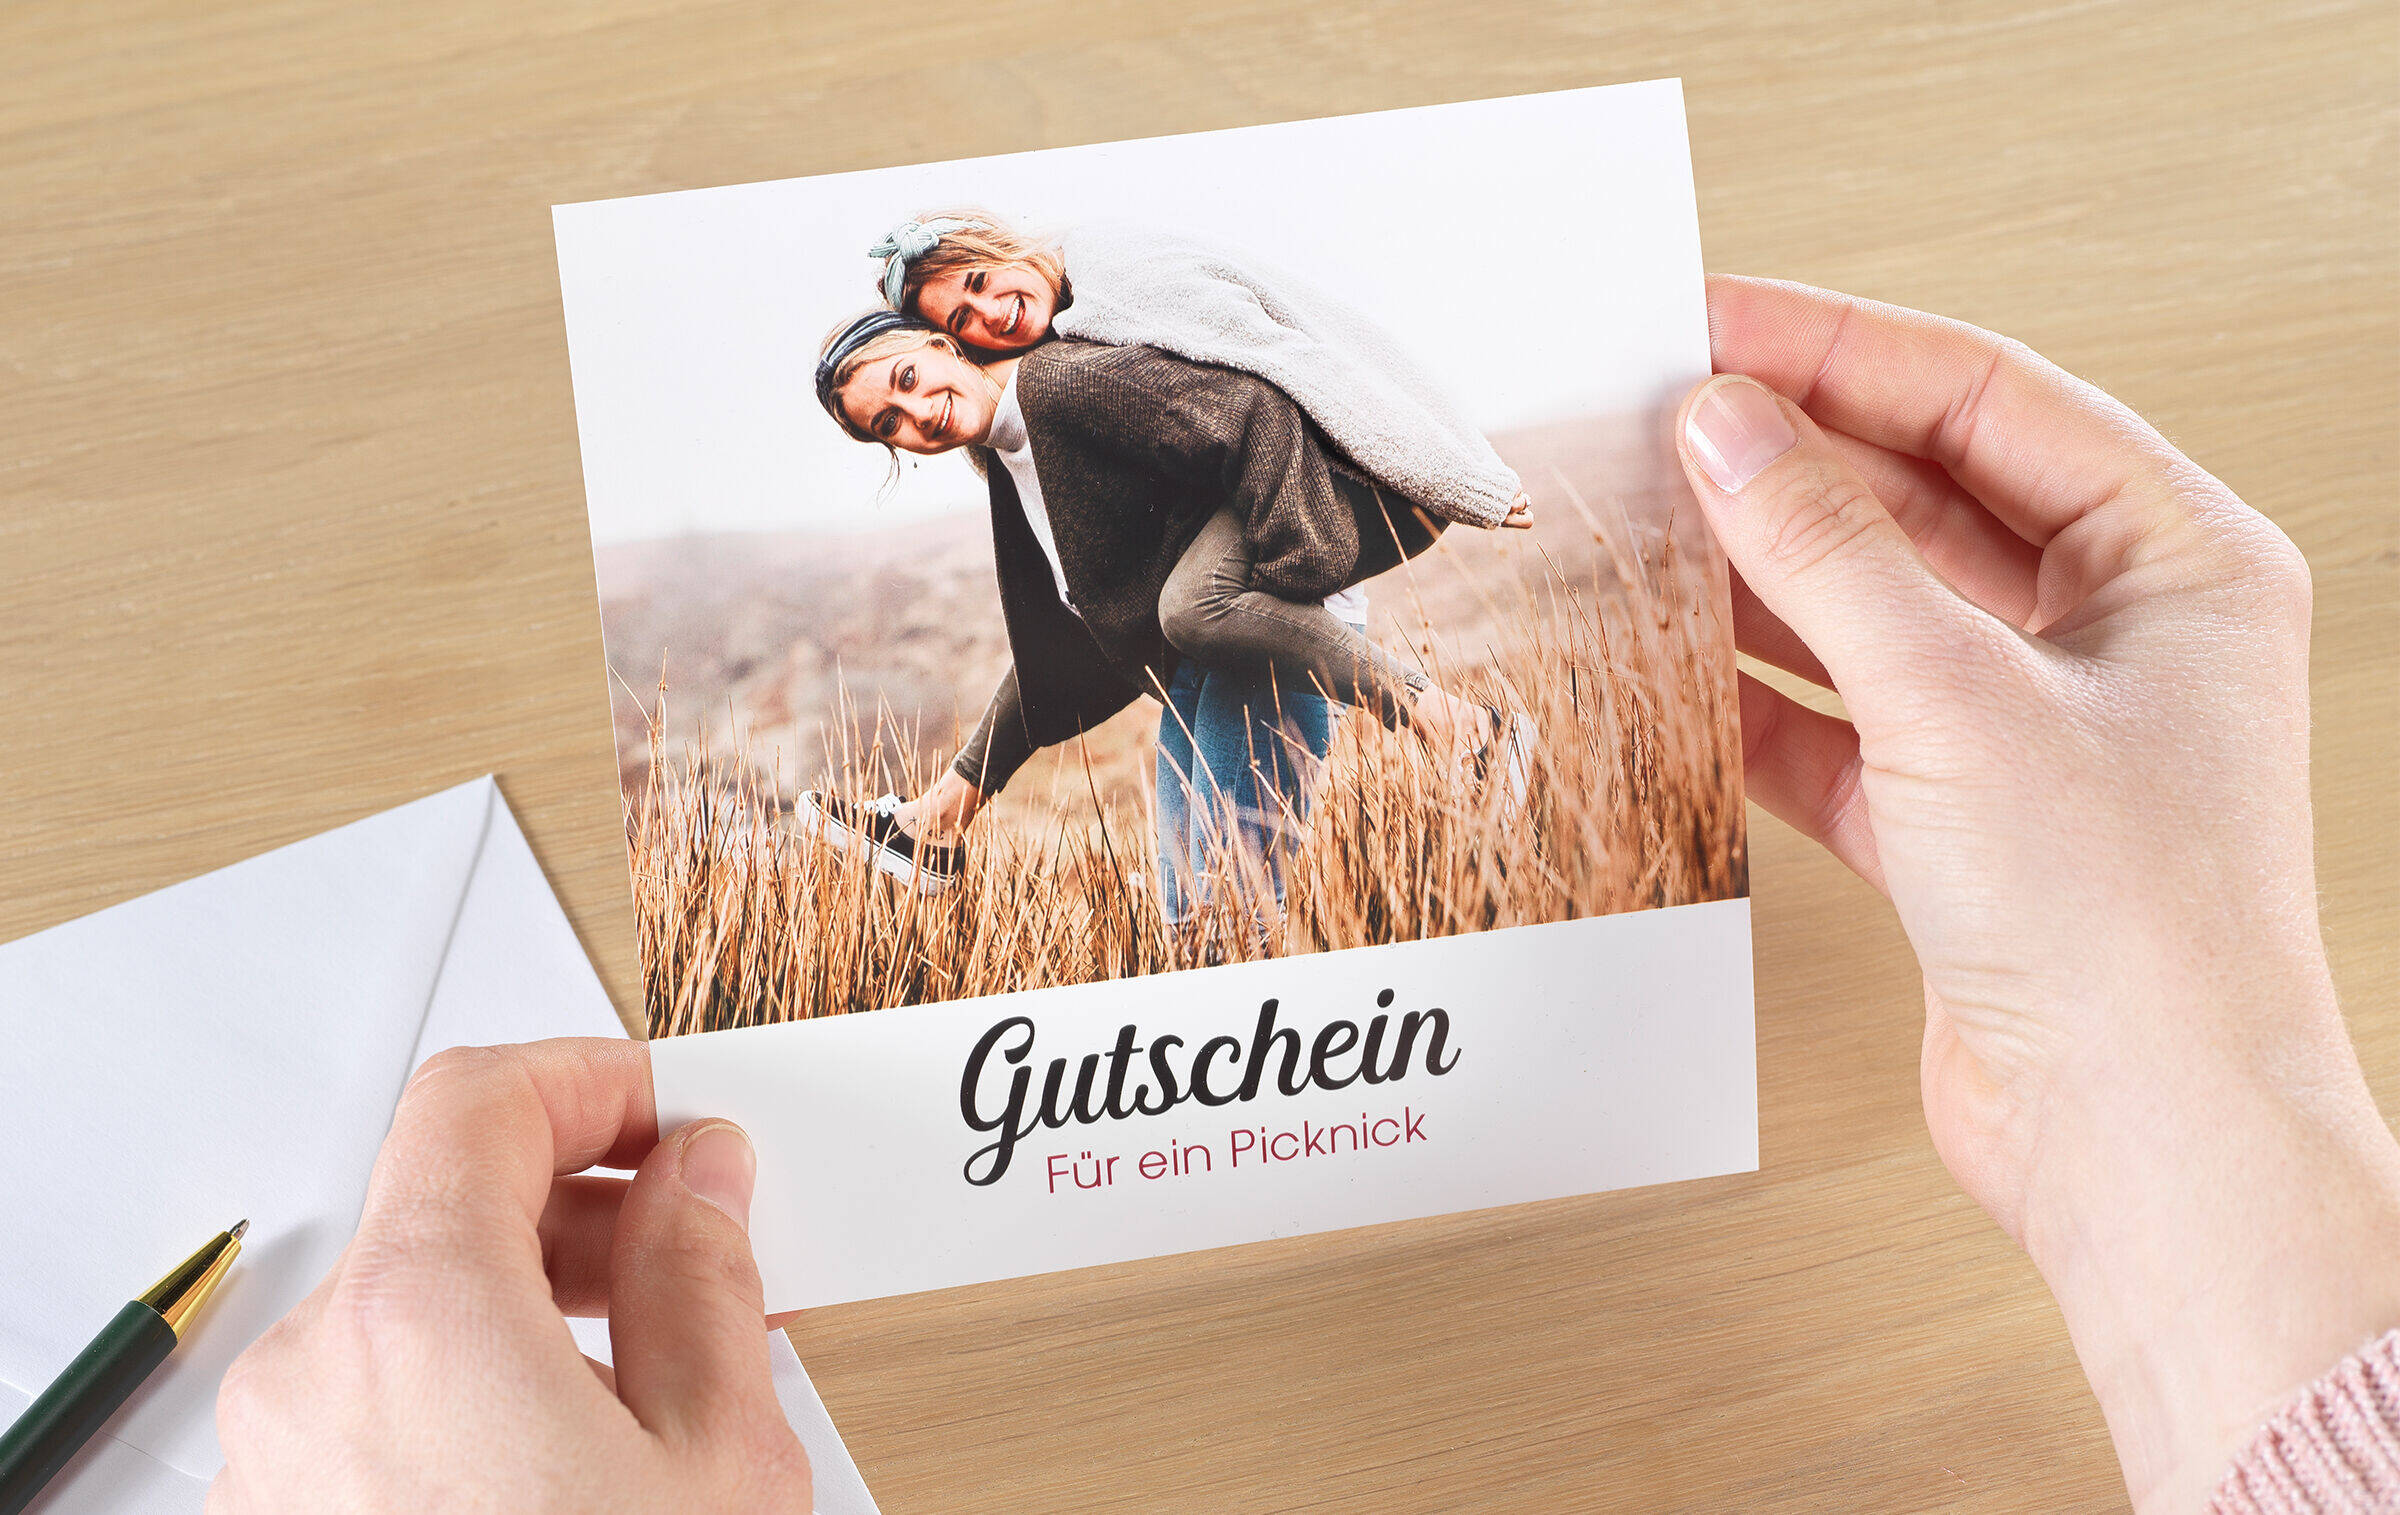 Ein Gutschein für ein Picknick ist mit dem Foto zweier Freundinnen bebildert und wird in Händen gehalten. Daneben liegen ein Briefumschlag und ein Stift.